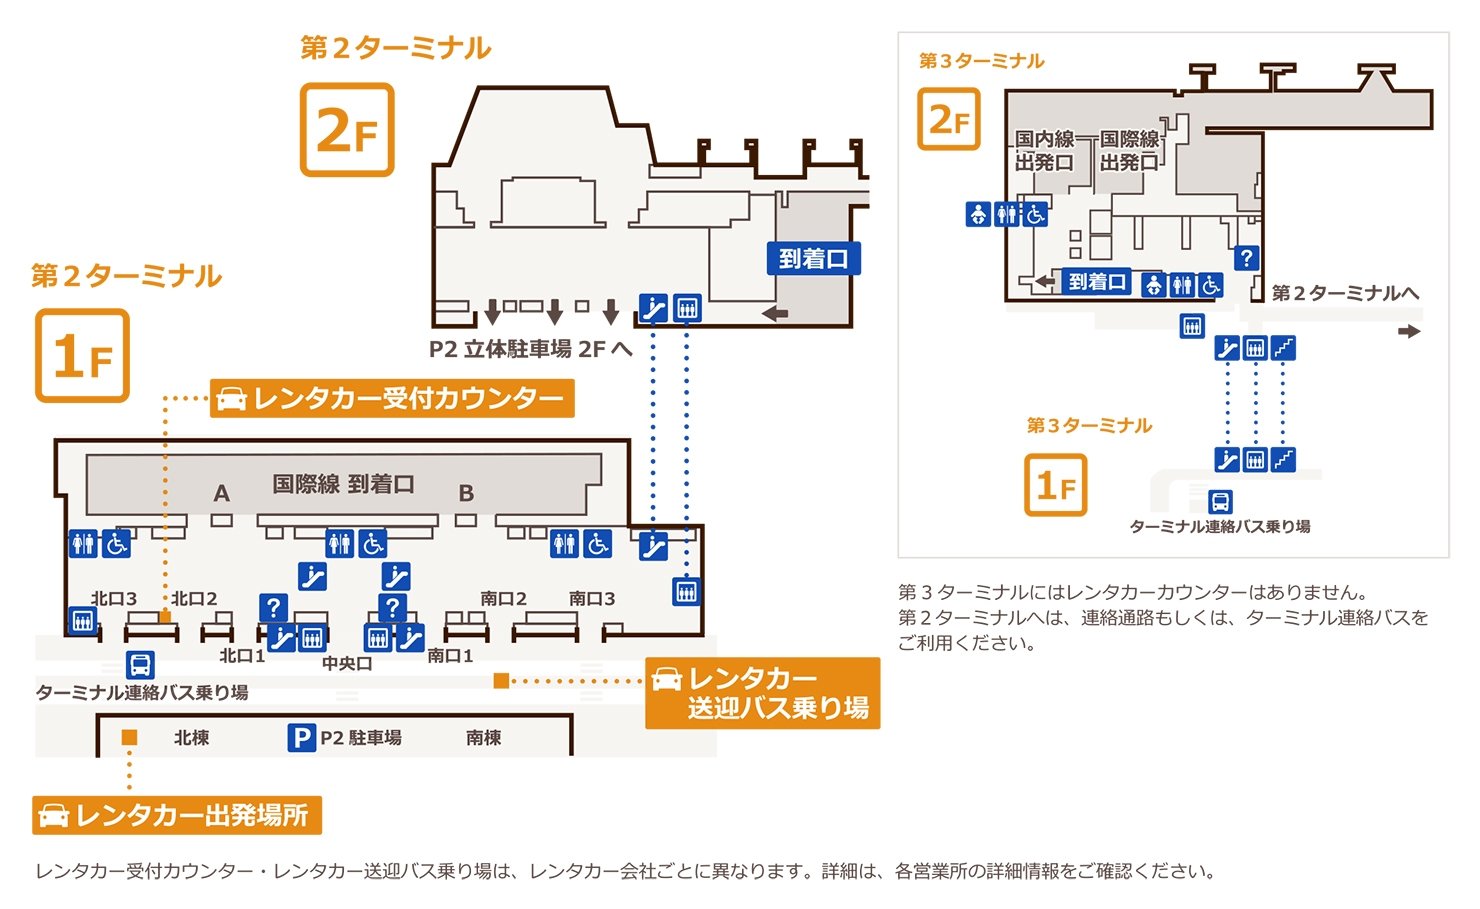 成田空港第2・3ターミナル案内マップ